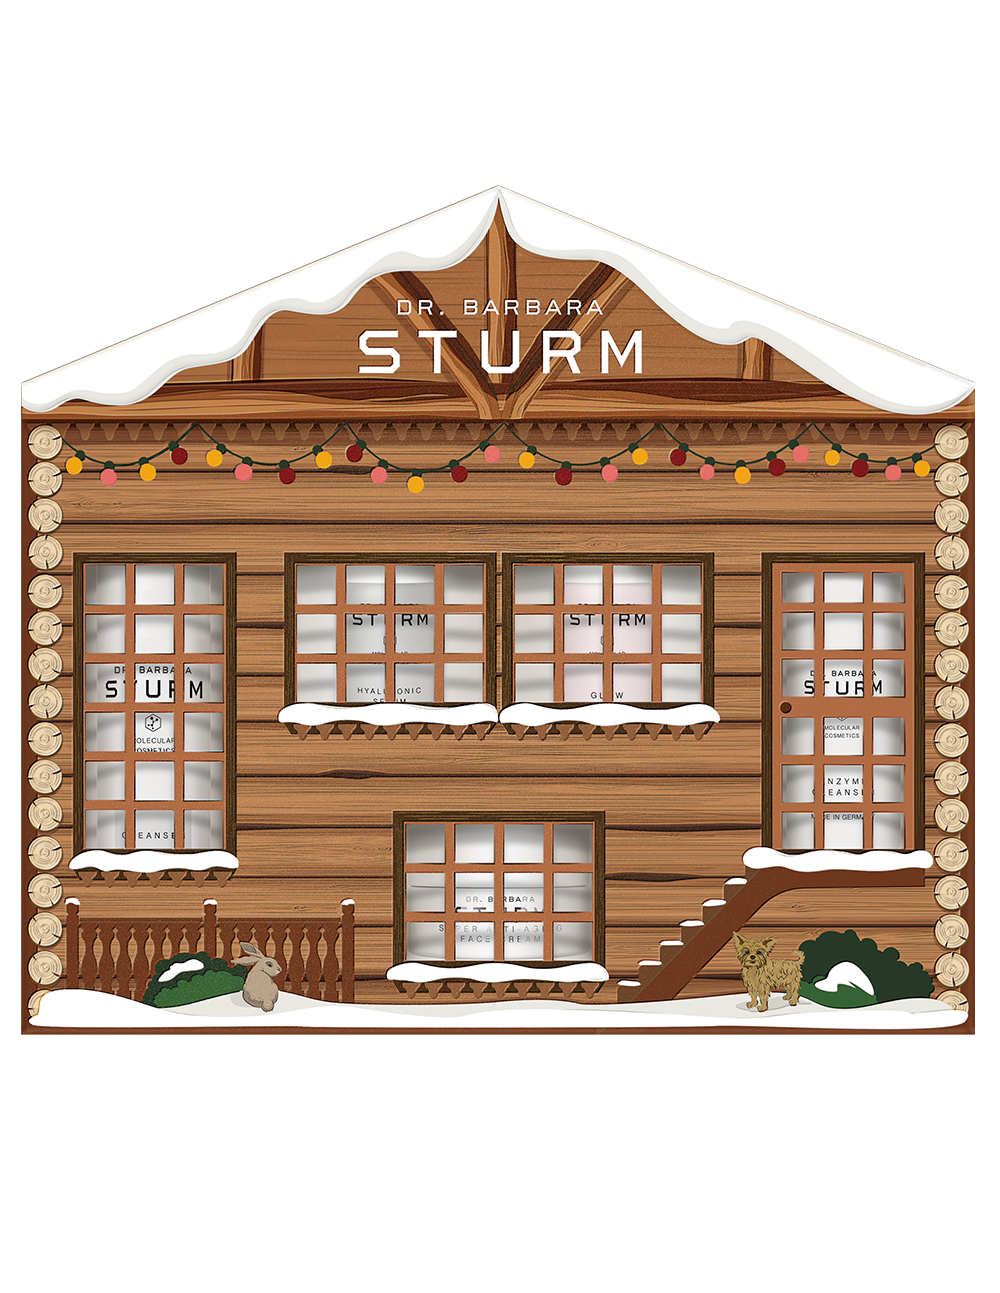 STURMGLOW HOUSE